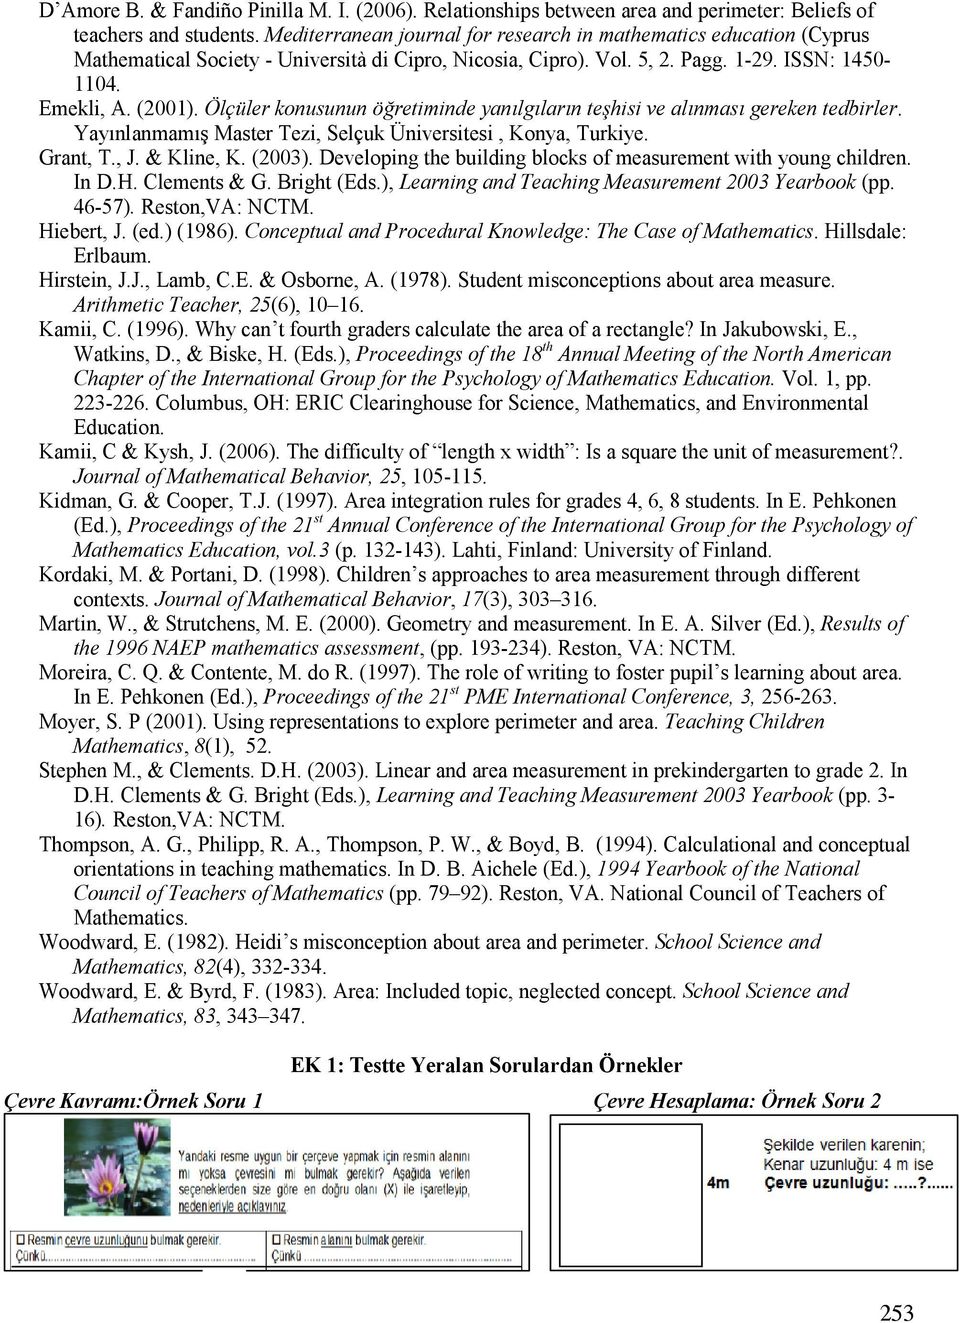 Ölçüler konusunun öretiminde yanlglarn tehisi ve alnmas gereken tedbirler. YayMnlanmamMN Master Tezi, Selçuk Üniversitesi, Konya, Turkiye. Grant, T., J. & Kline, K. (2003).